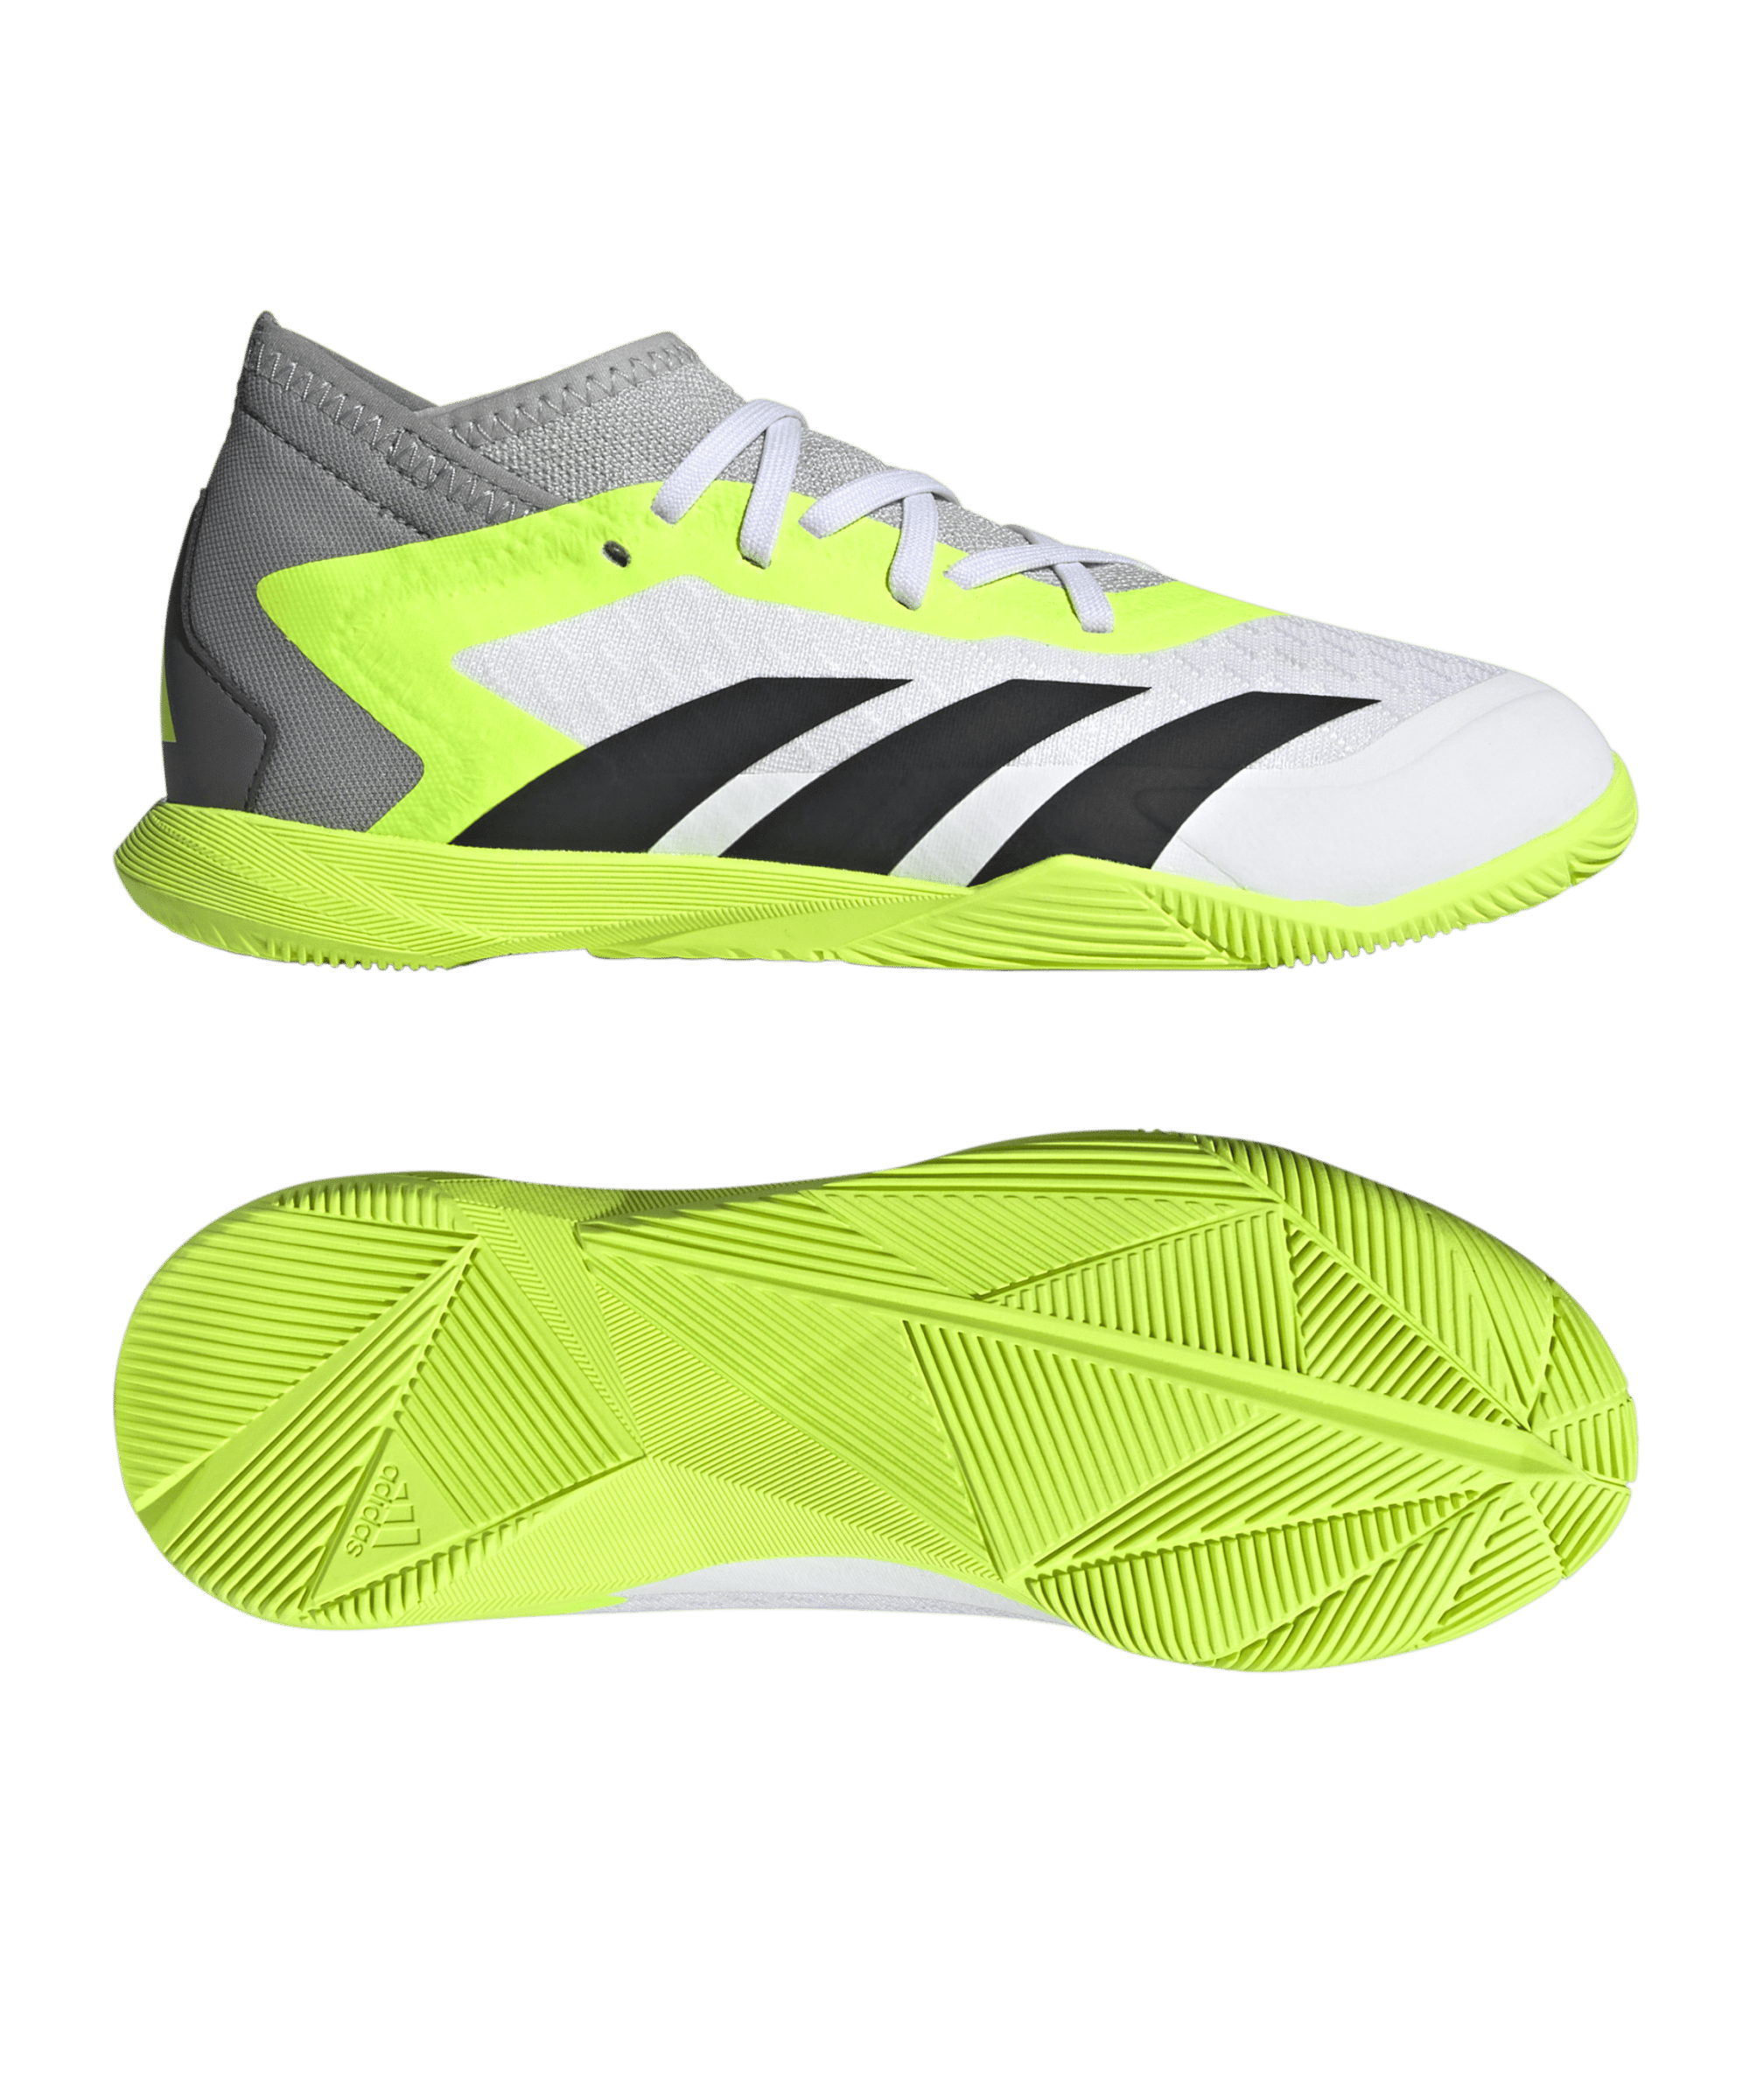 Adidas Fußballschuh Kinder Predator Accuracy.3 IN Halle Crazyrush weiß schwarz gelb